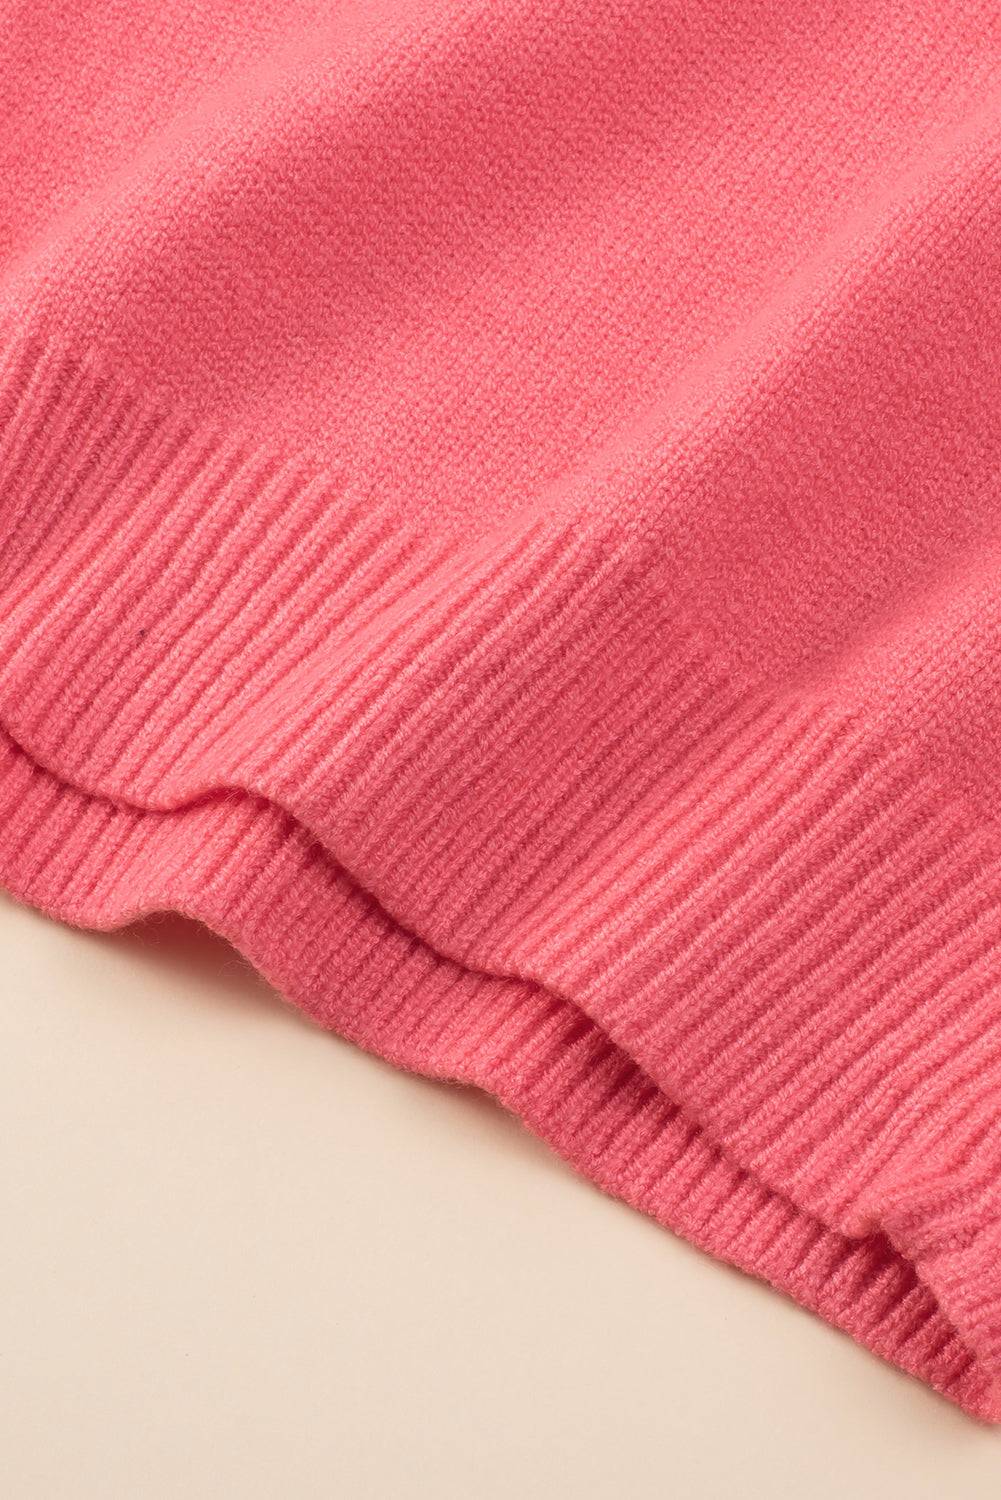 Rožnat pulover velike velikosti z v-izrezom in spuščenimi rameni